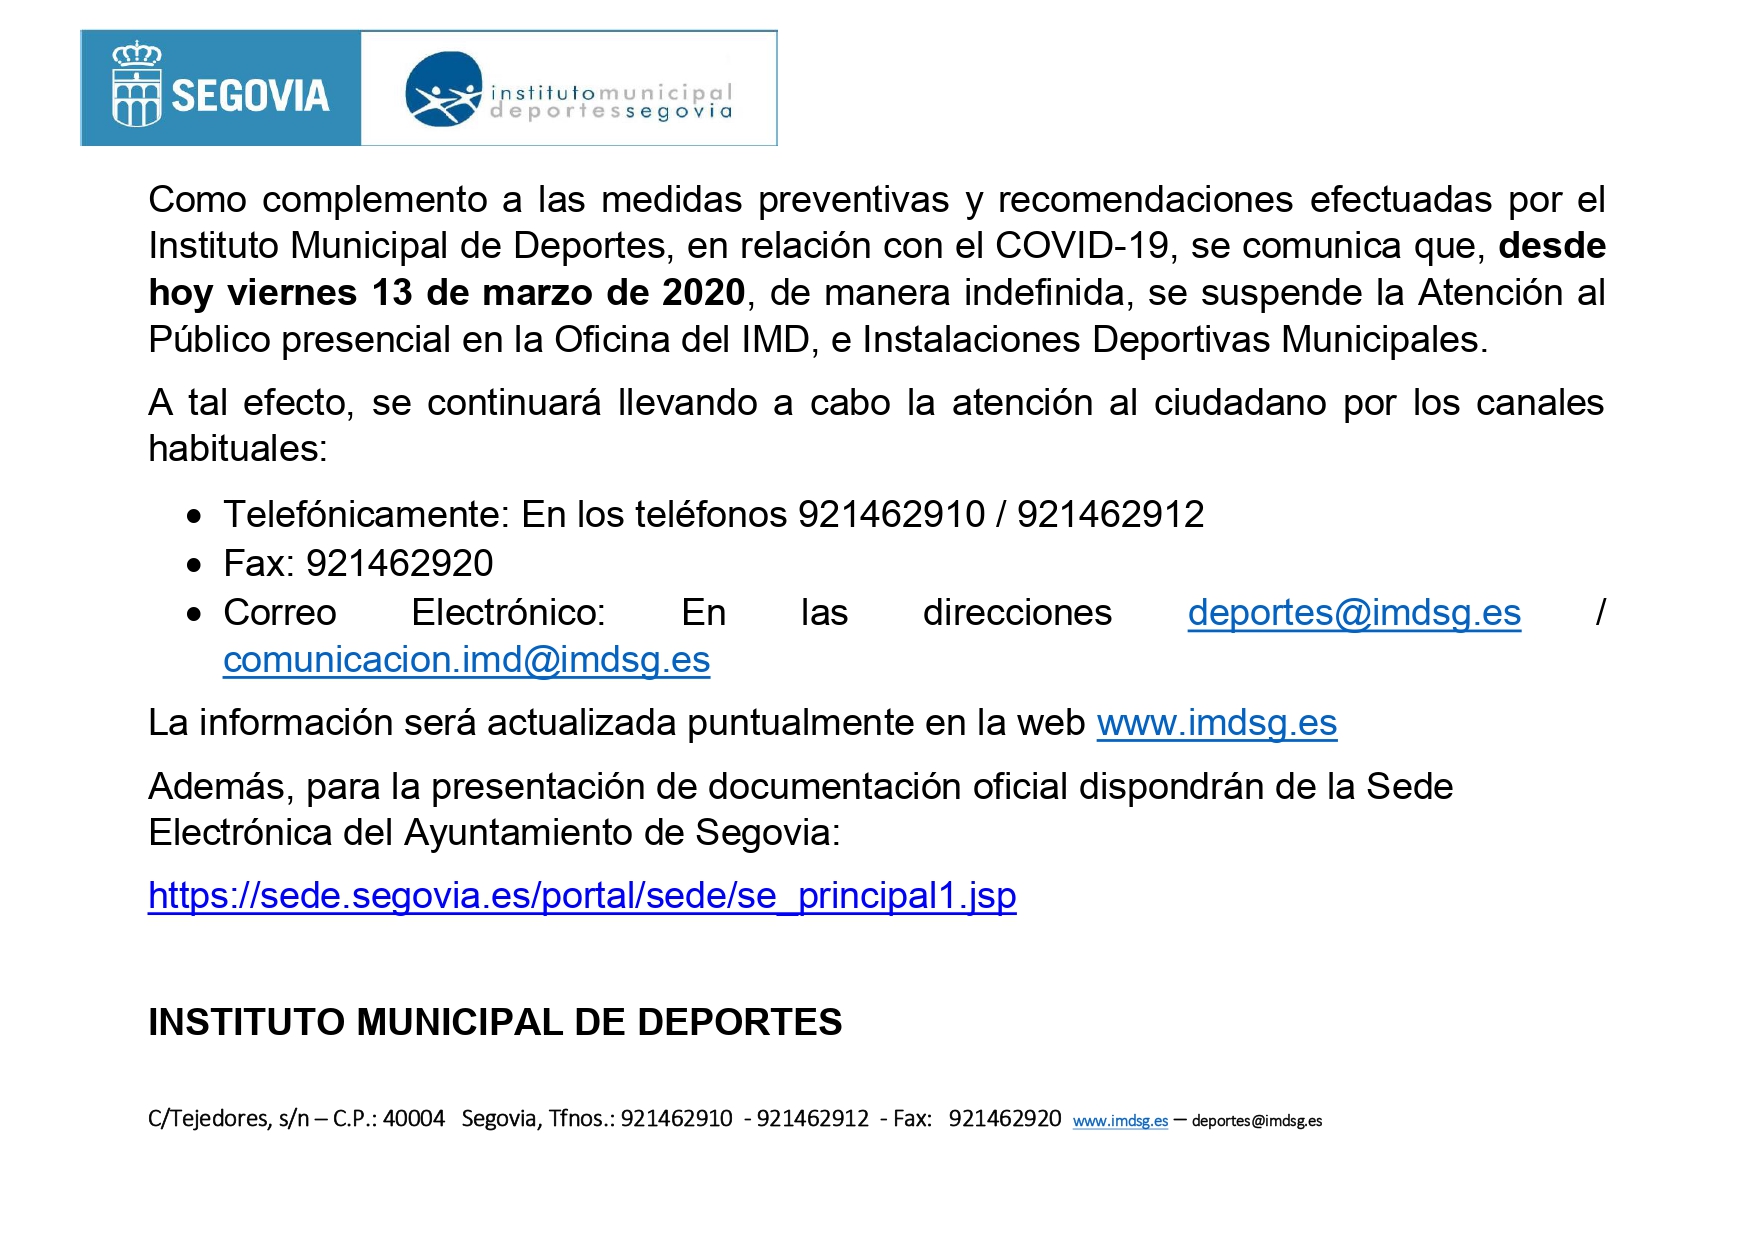 Suspendida la Atención al Público presencial en la Oficina del IMD e Instalaciones Deportivas Municipales